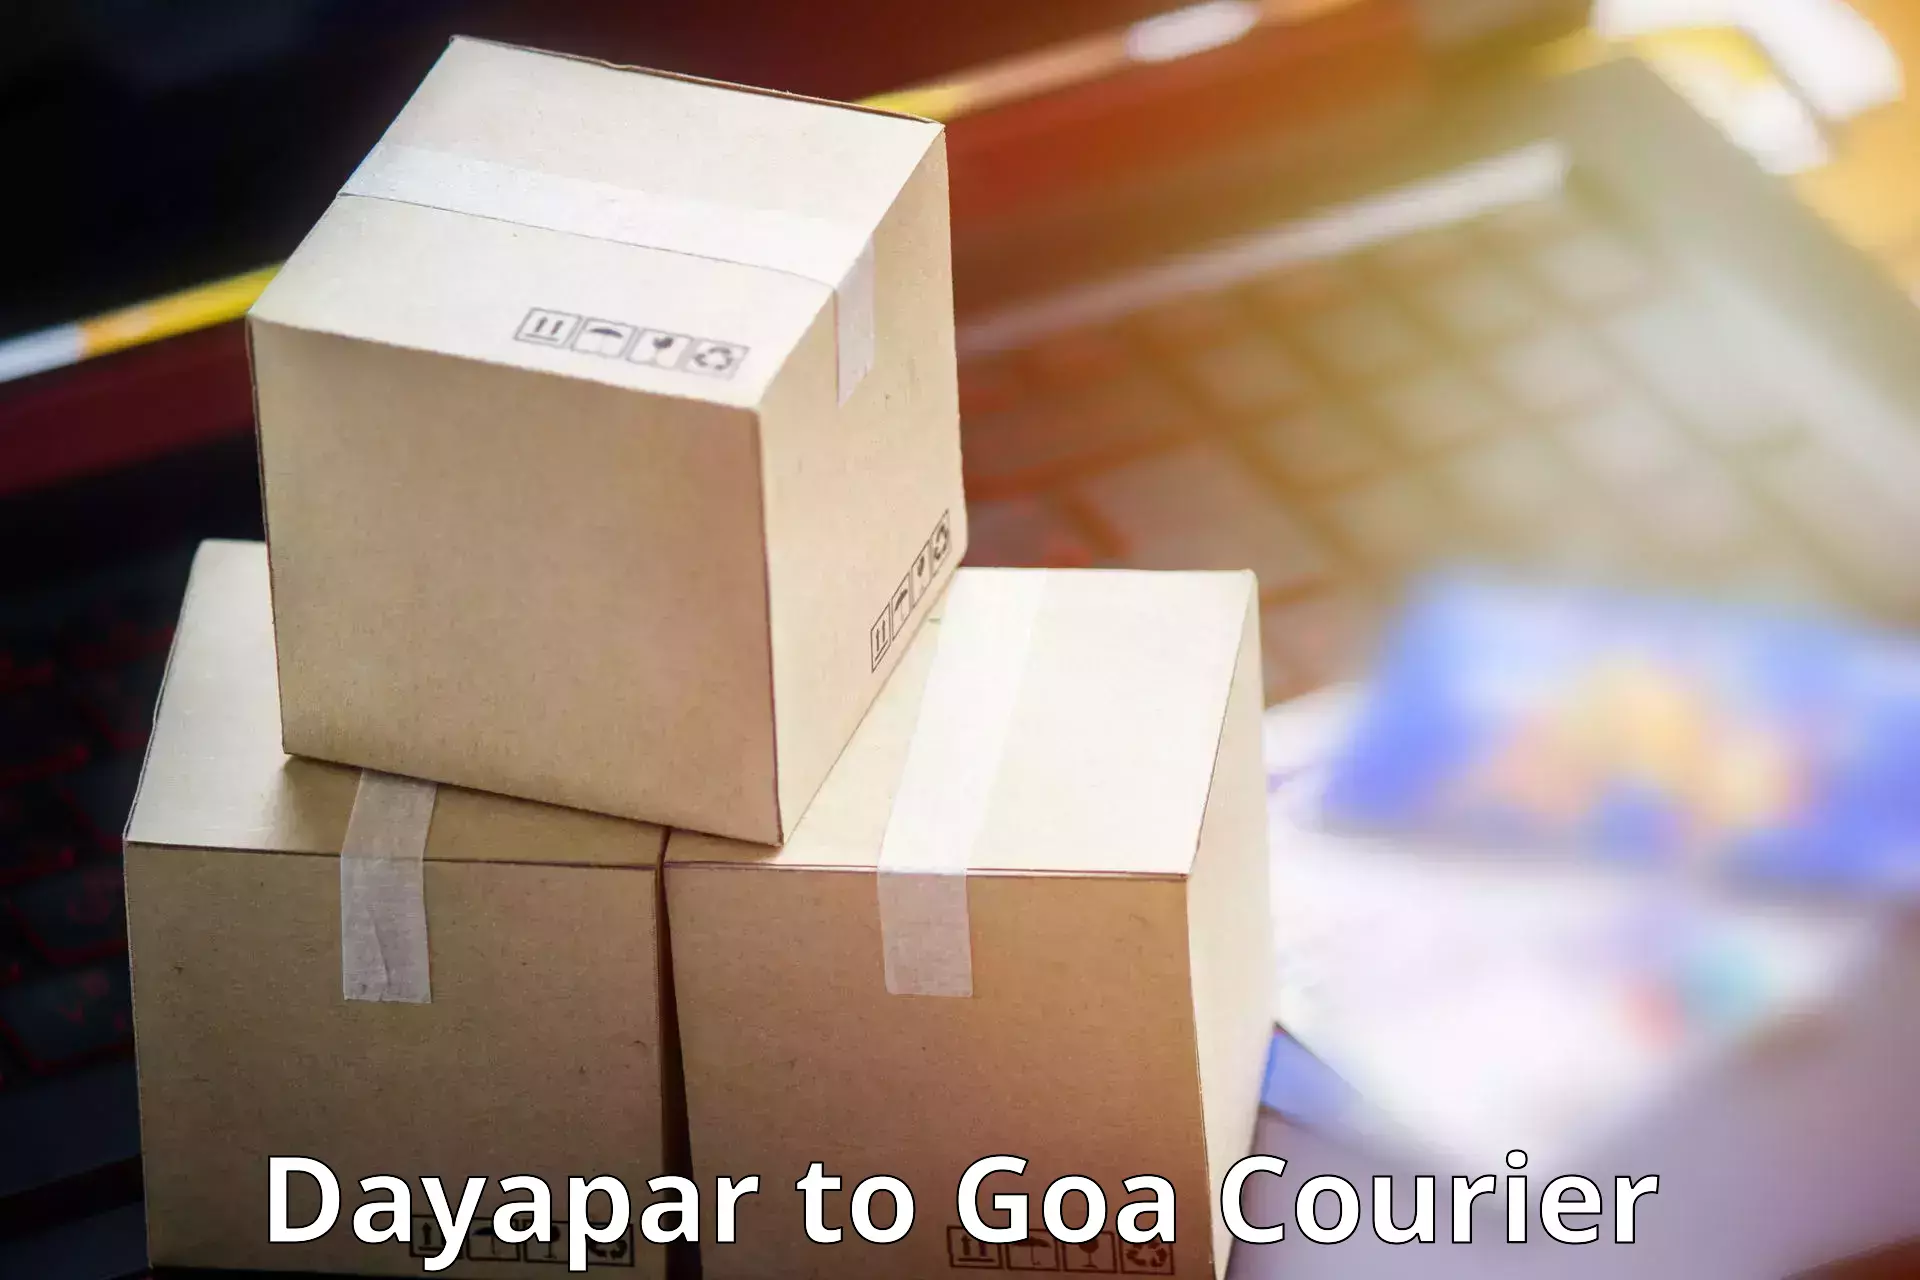 Express courier facilities Dayapar to Goa